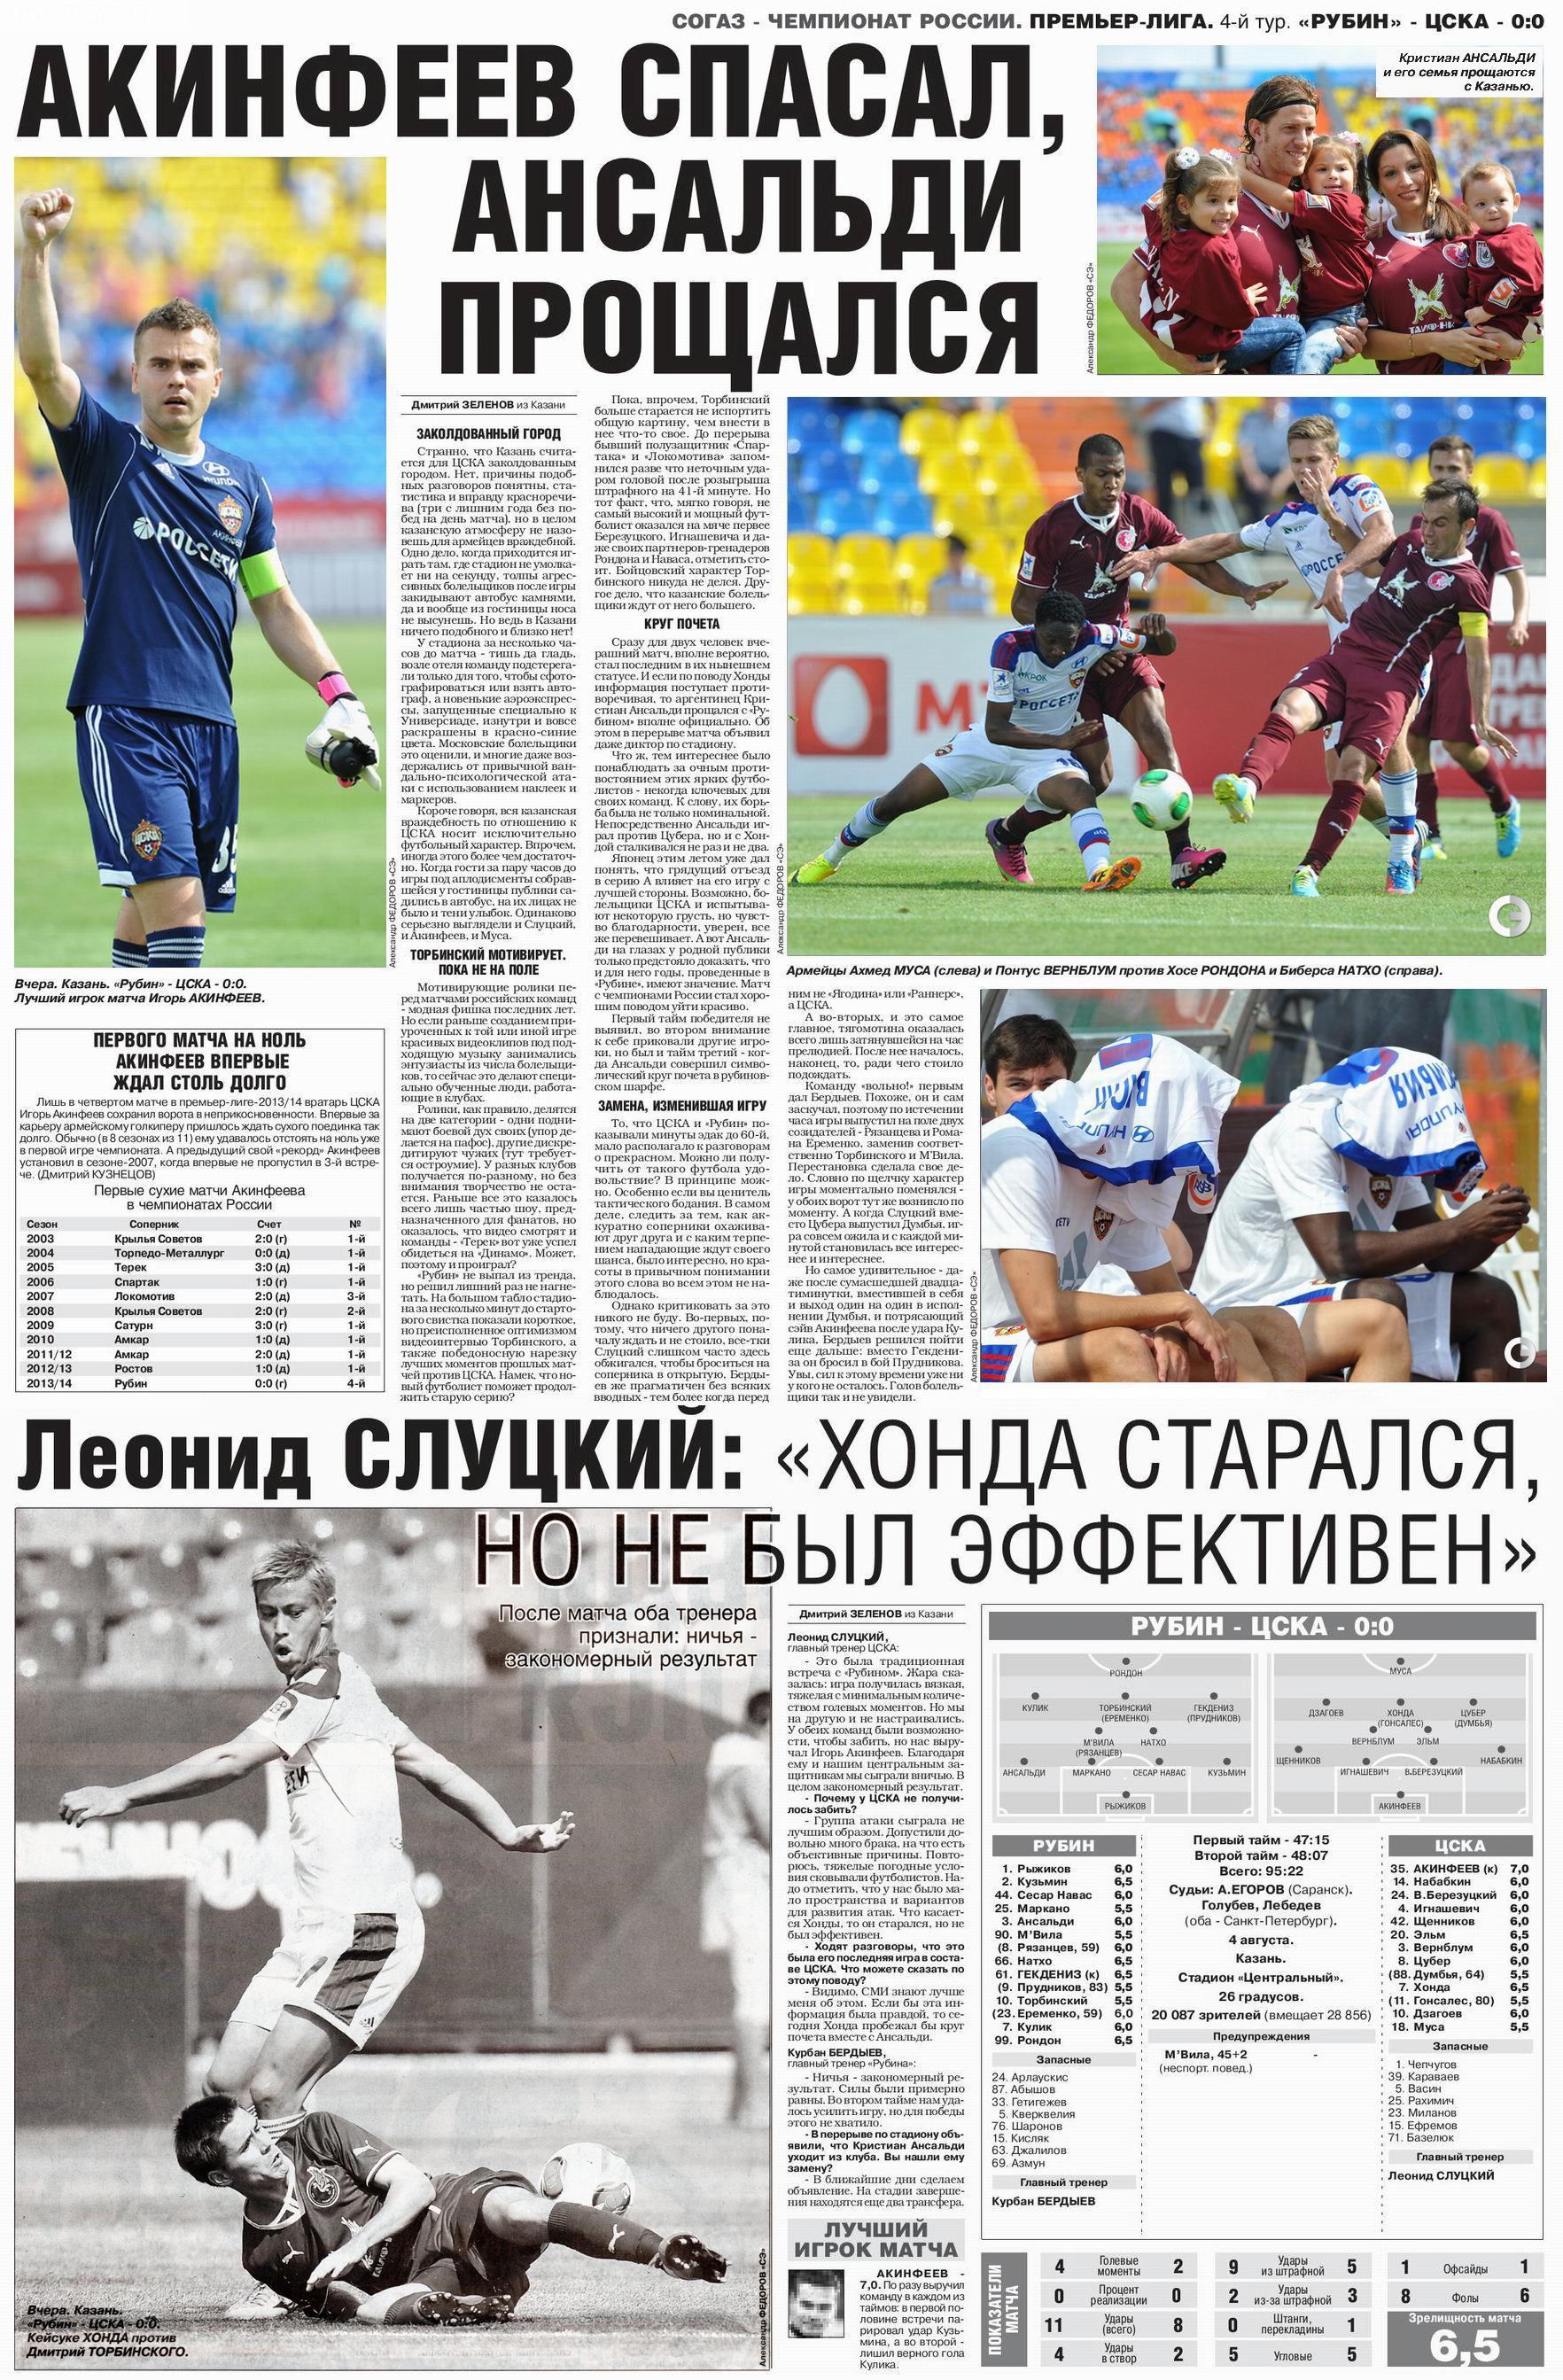 2013-08-04.Rubin-CSKA